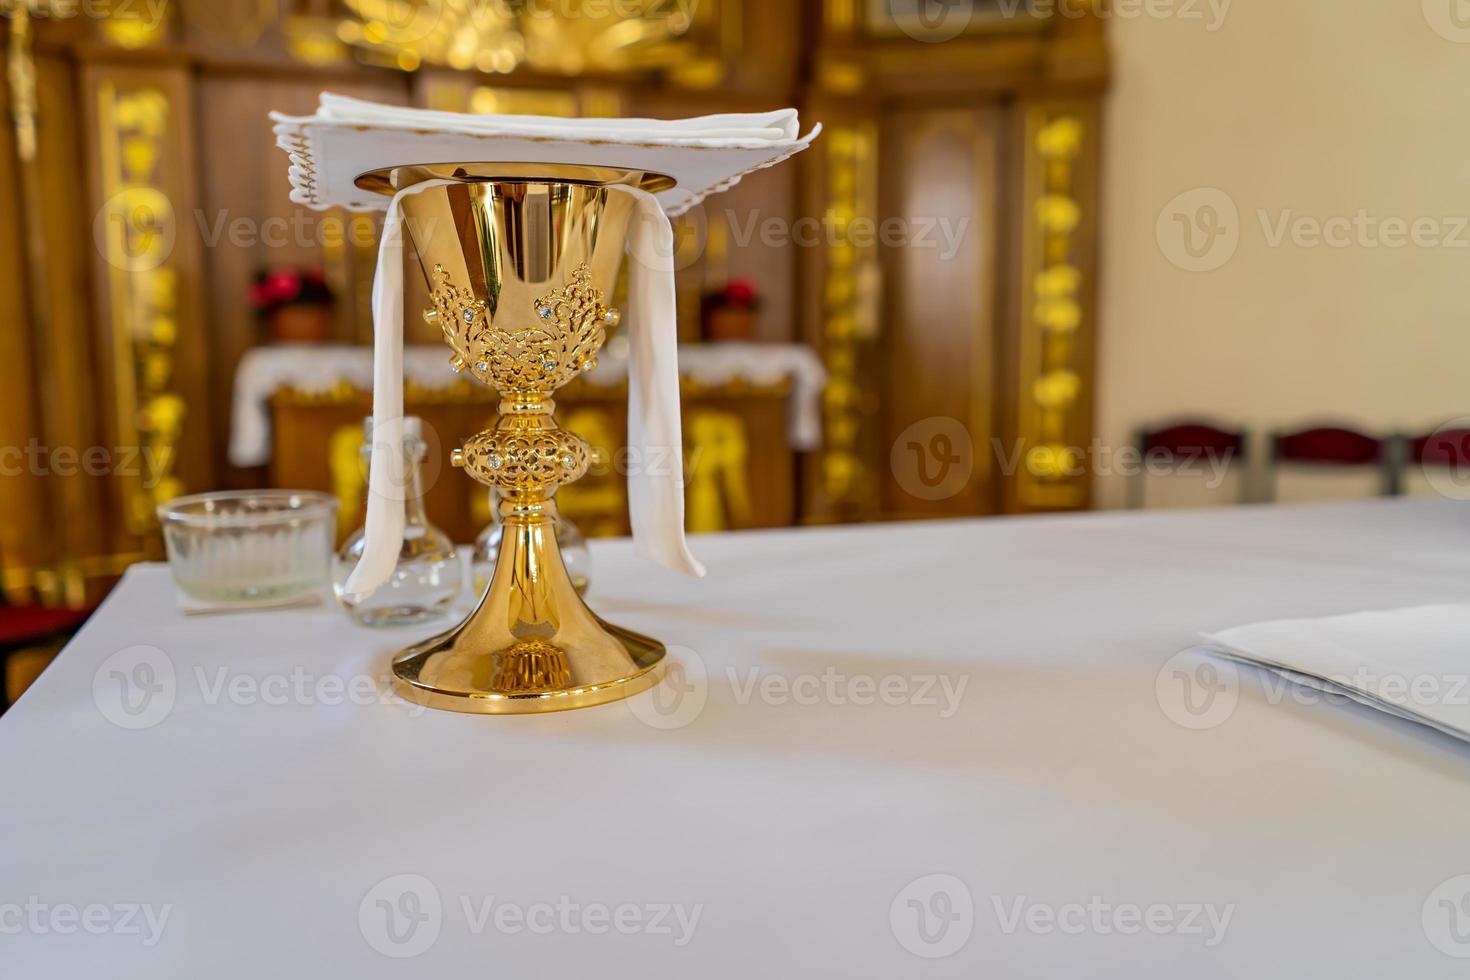 una coppa di vino sull'altare in una chiesa cattolica foto